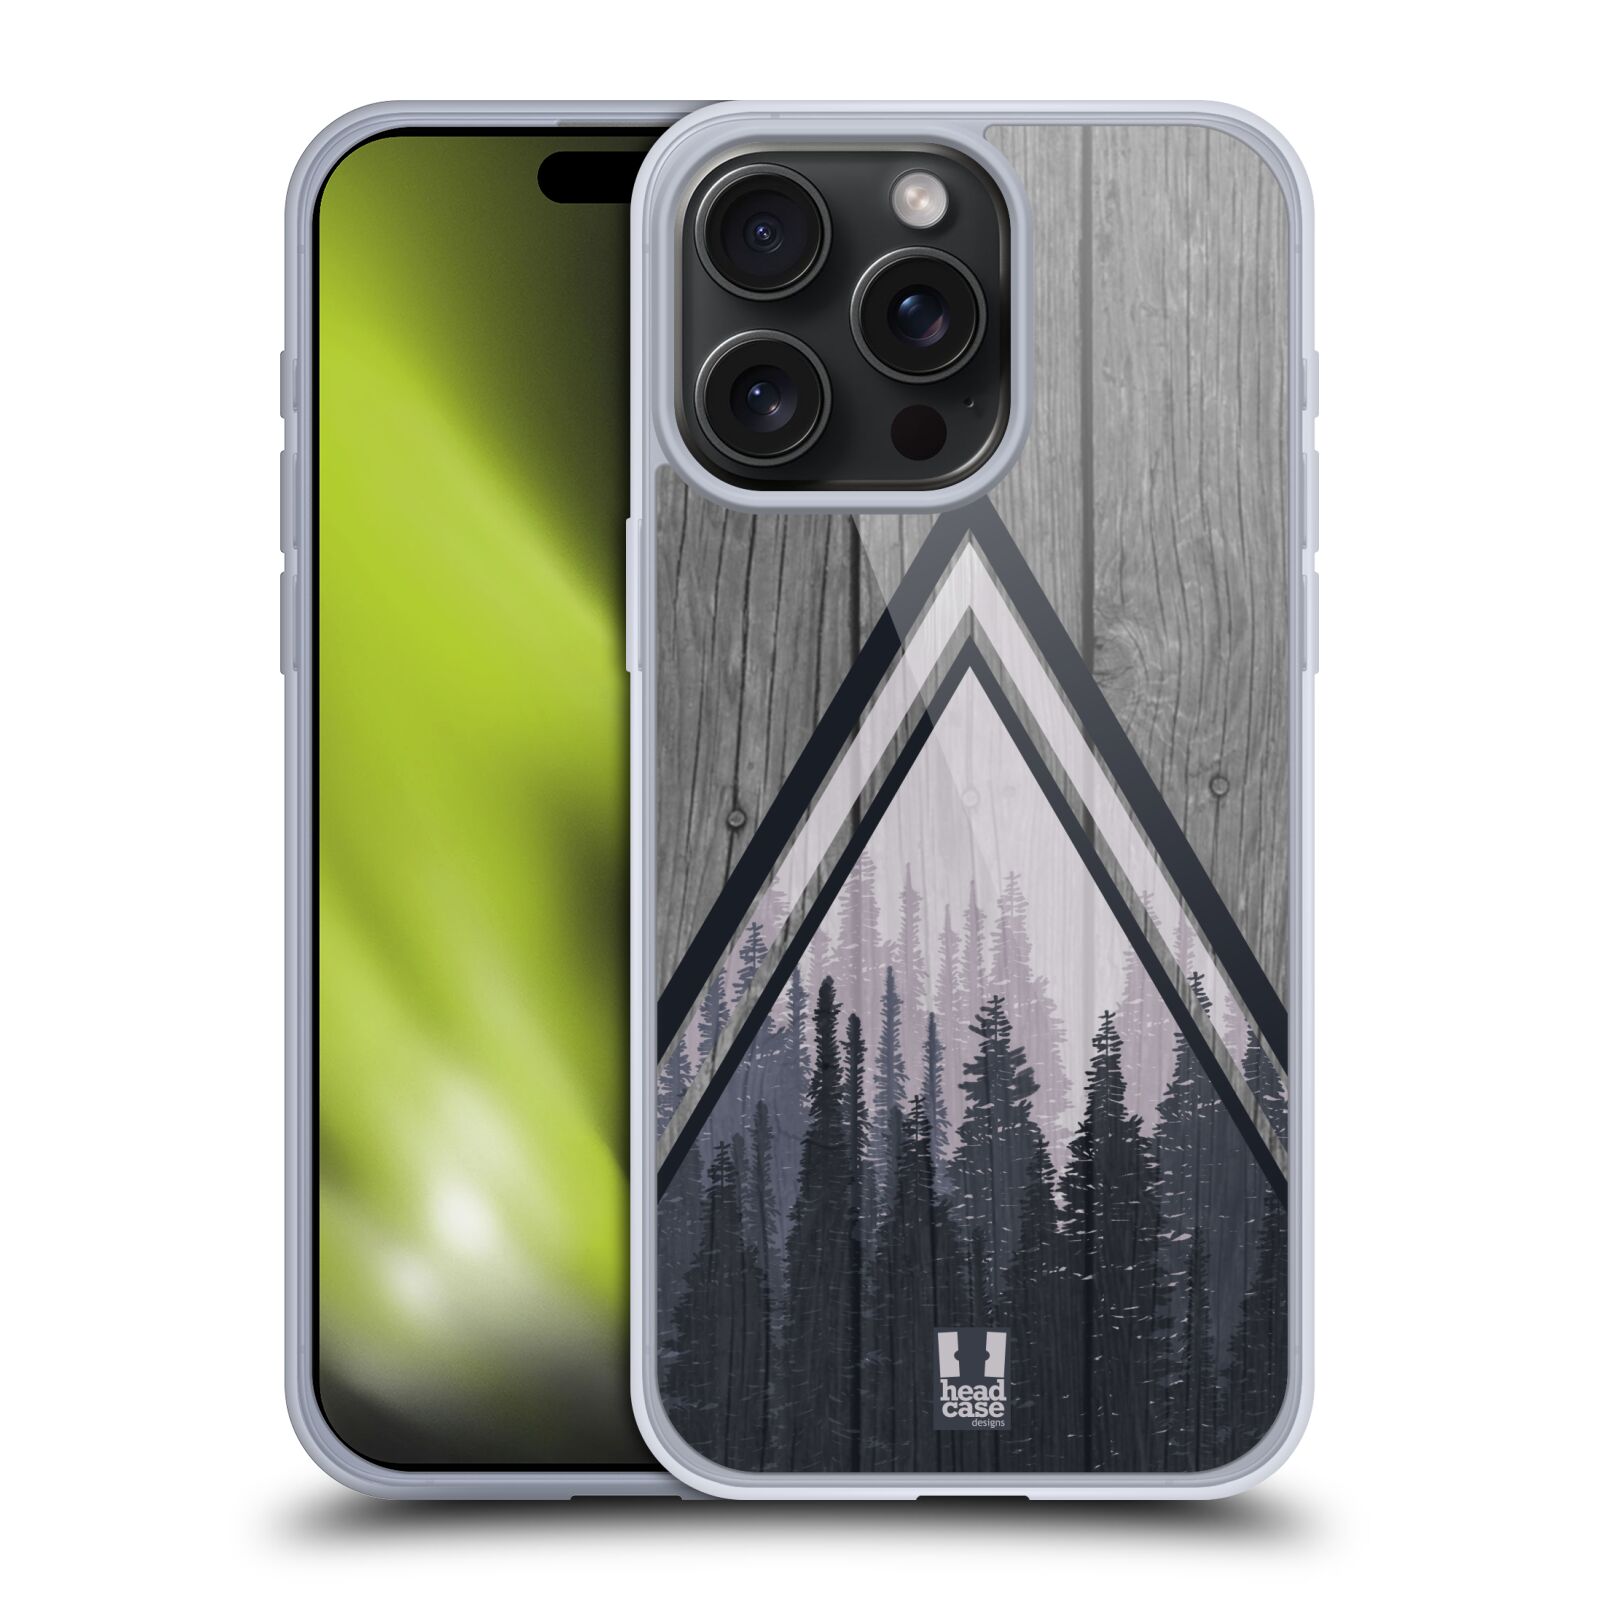 Silikonové lesklé pouzdro na mobil Apple iPhone 15 Pro Max - Head Case - Dřevo a temný les (Silikonový lesklý kryt, obal, pouzdro na mobilní telefon Apple iPhone 15 Pro Max s motivem Dřevo a temný les)